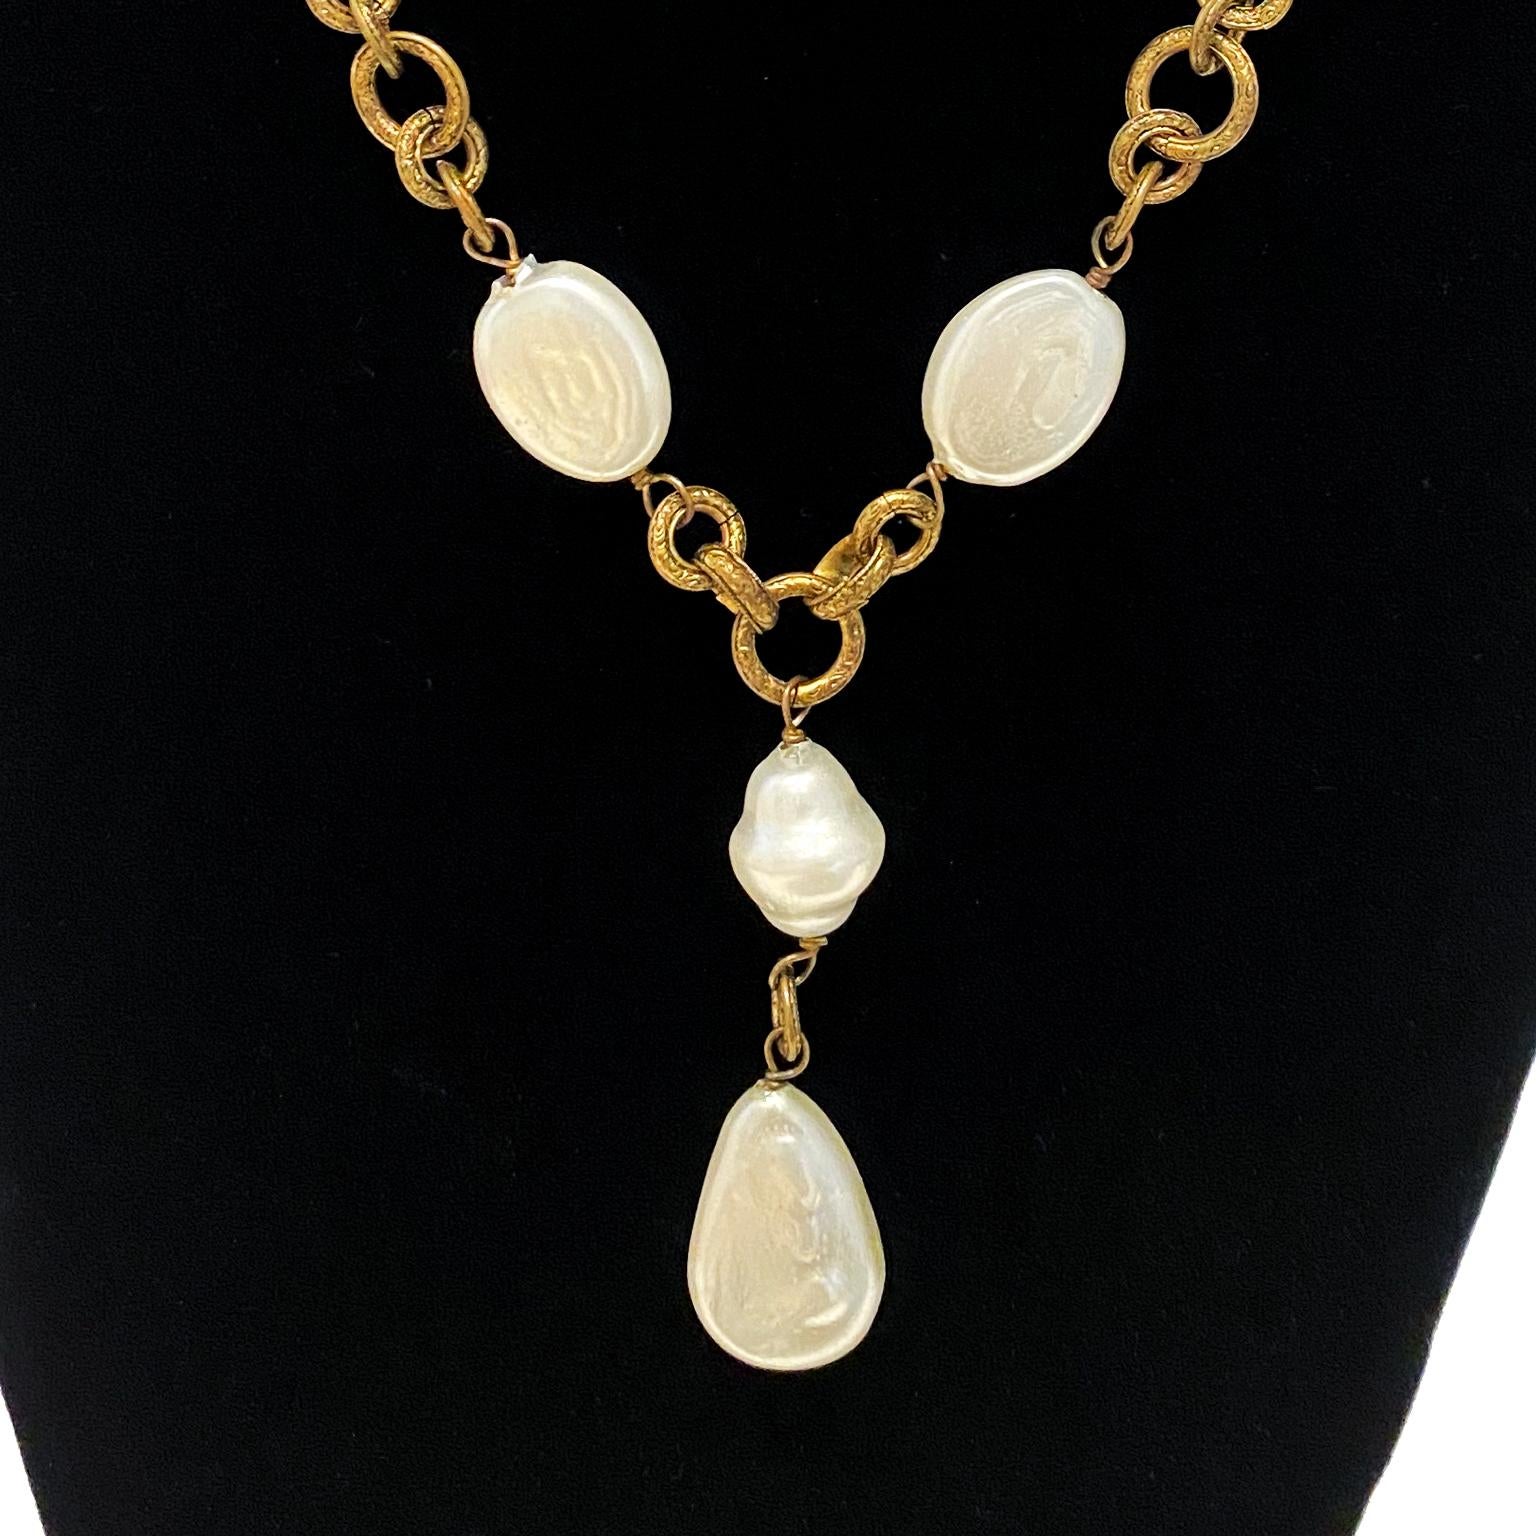 Chanel 1985 natürliche Form flache Perle und vergoldetes Metall Kette Halskette mit Perle Tropfen. Schöne Patina auf der gravierten dreigliedrigen Kette. Die Perlen sind in ausgezeichnetem Zustand und weisen keine Anzeichen von Beschädigungen oder